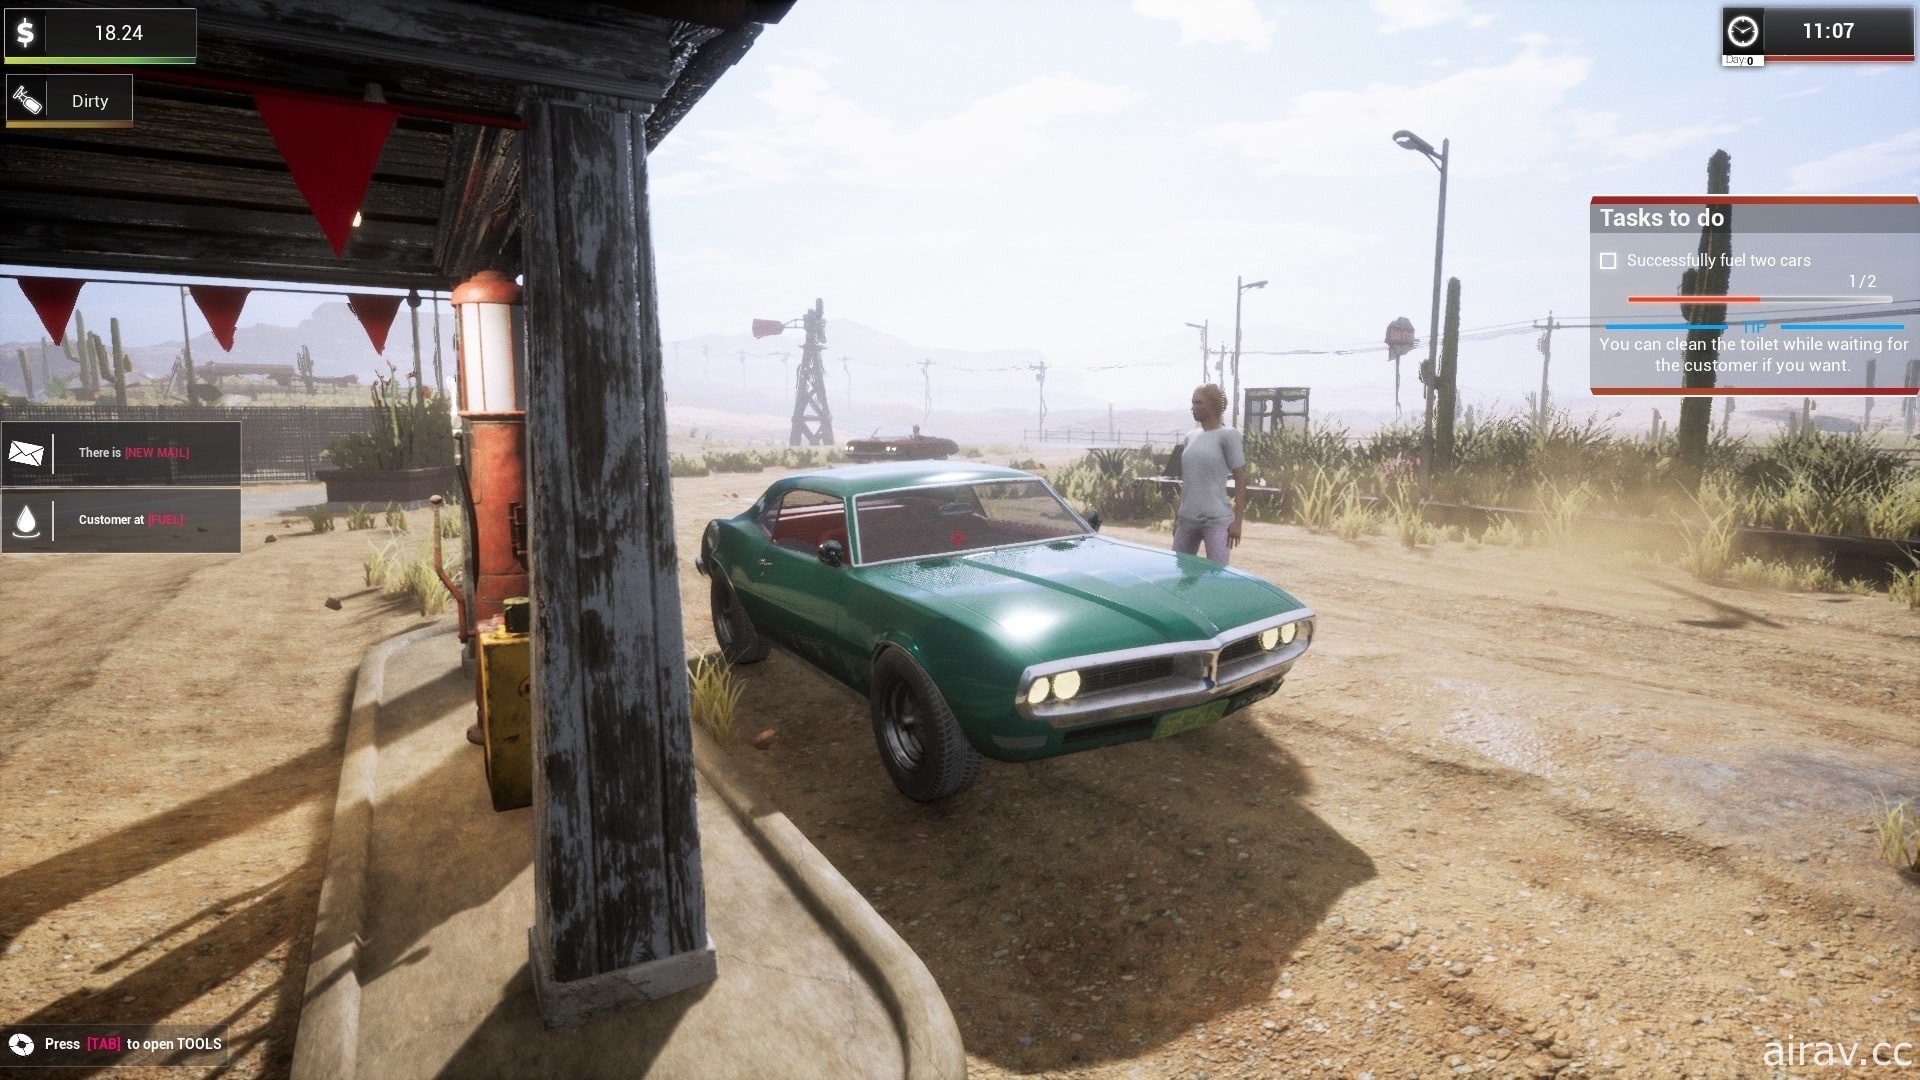 模擬新作《模擬加油站》釋出試玩版本 翻新重整廢棄加油站